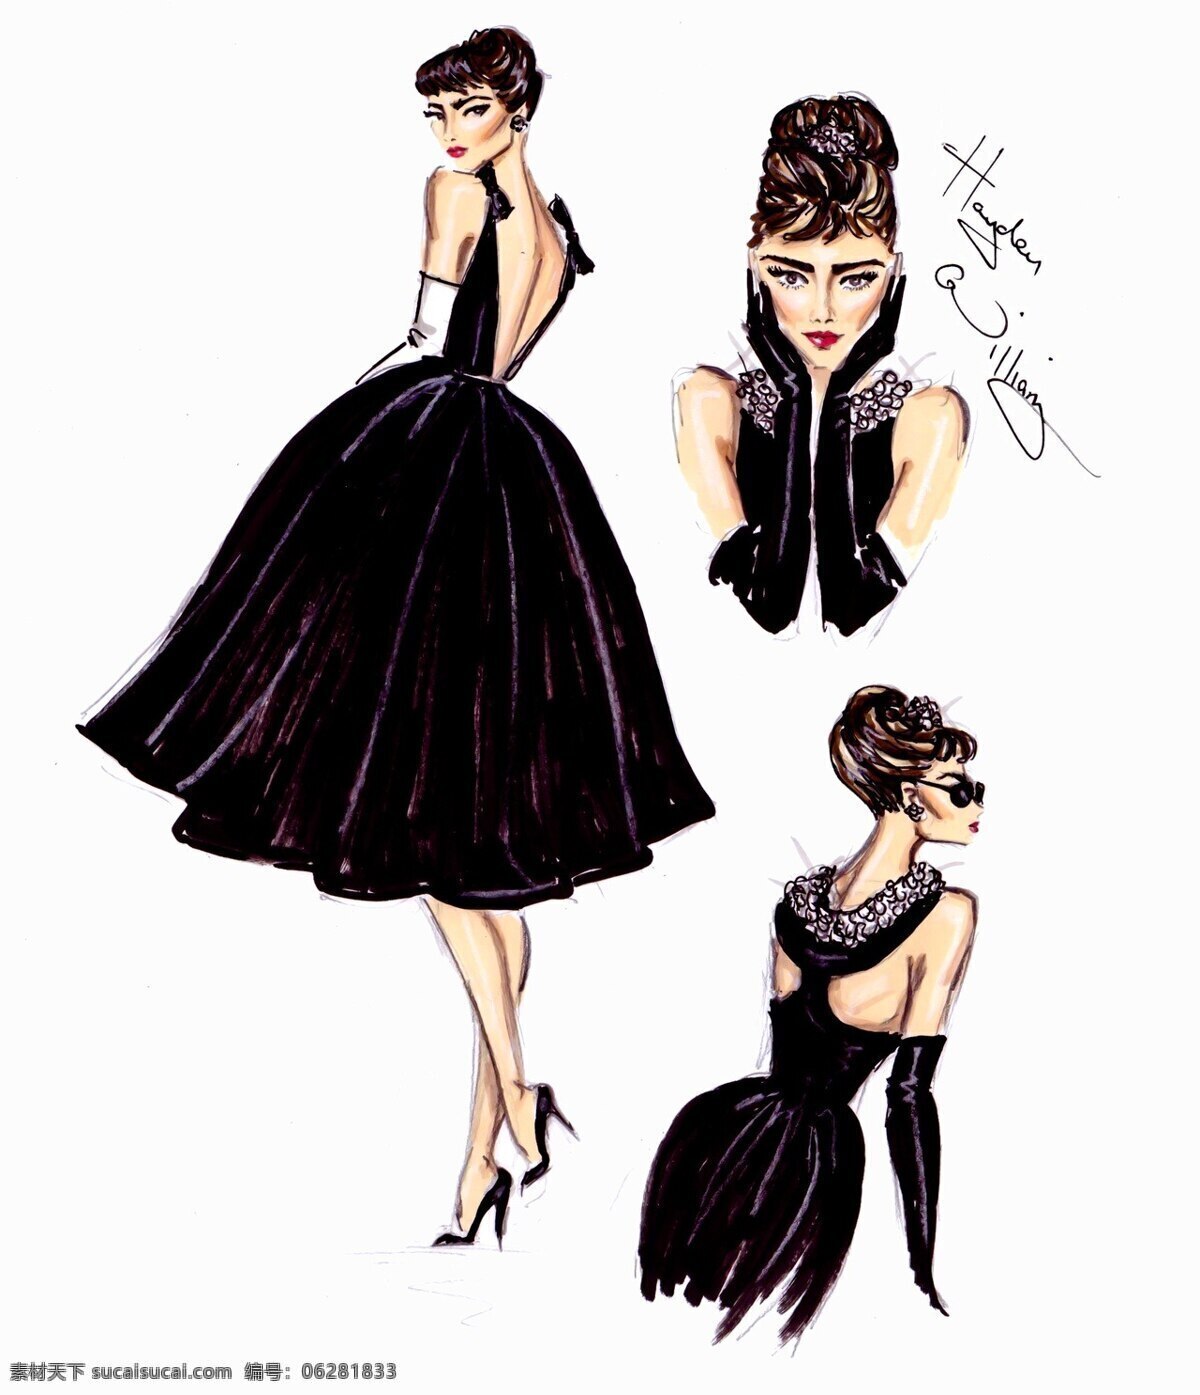 款 黑色 连衣裙 设计图 服装设计 时尚女装 职业女装 职业装 女装设计 效果图 短裙 衬衫 服装 服装效果图